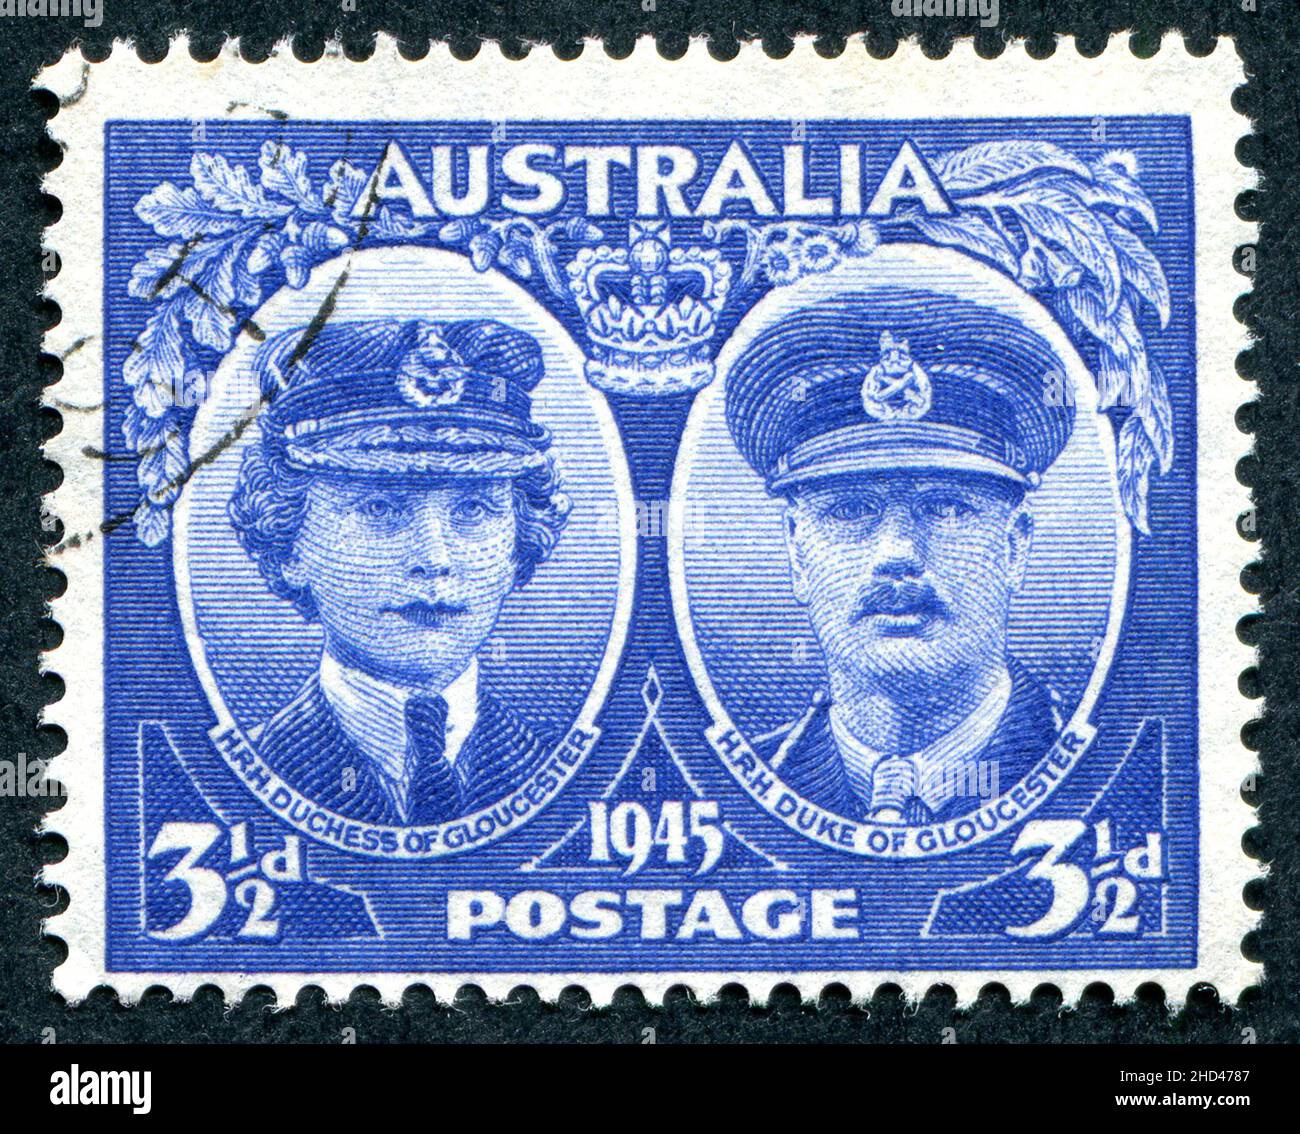 Un sello postal australiano de la edición 1945 3 1/2D con el duque y la duquesa de Gloucester. El Príncipe Enrique, Duque de Gloucester, fue Gobernador General de Australia del 30 de enero de 1945 al 11 de marzo de 1947. El sello fue diseñado y grabado por Frank D. Manley. Foto de stock